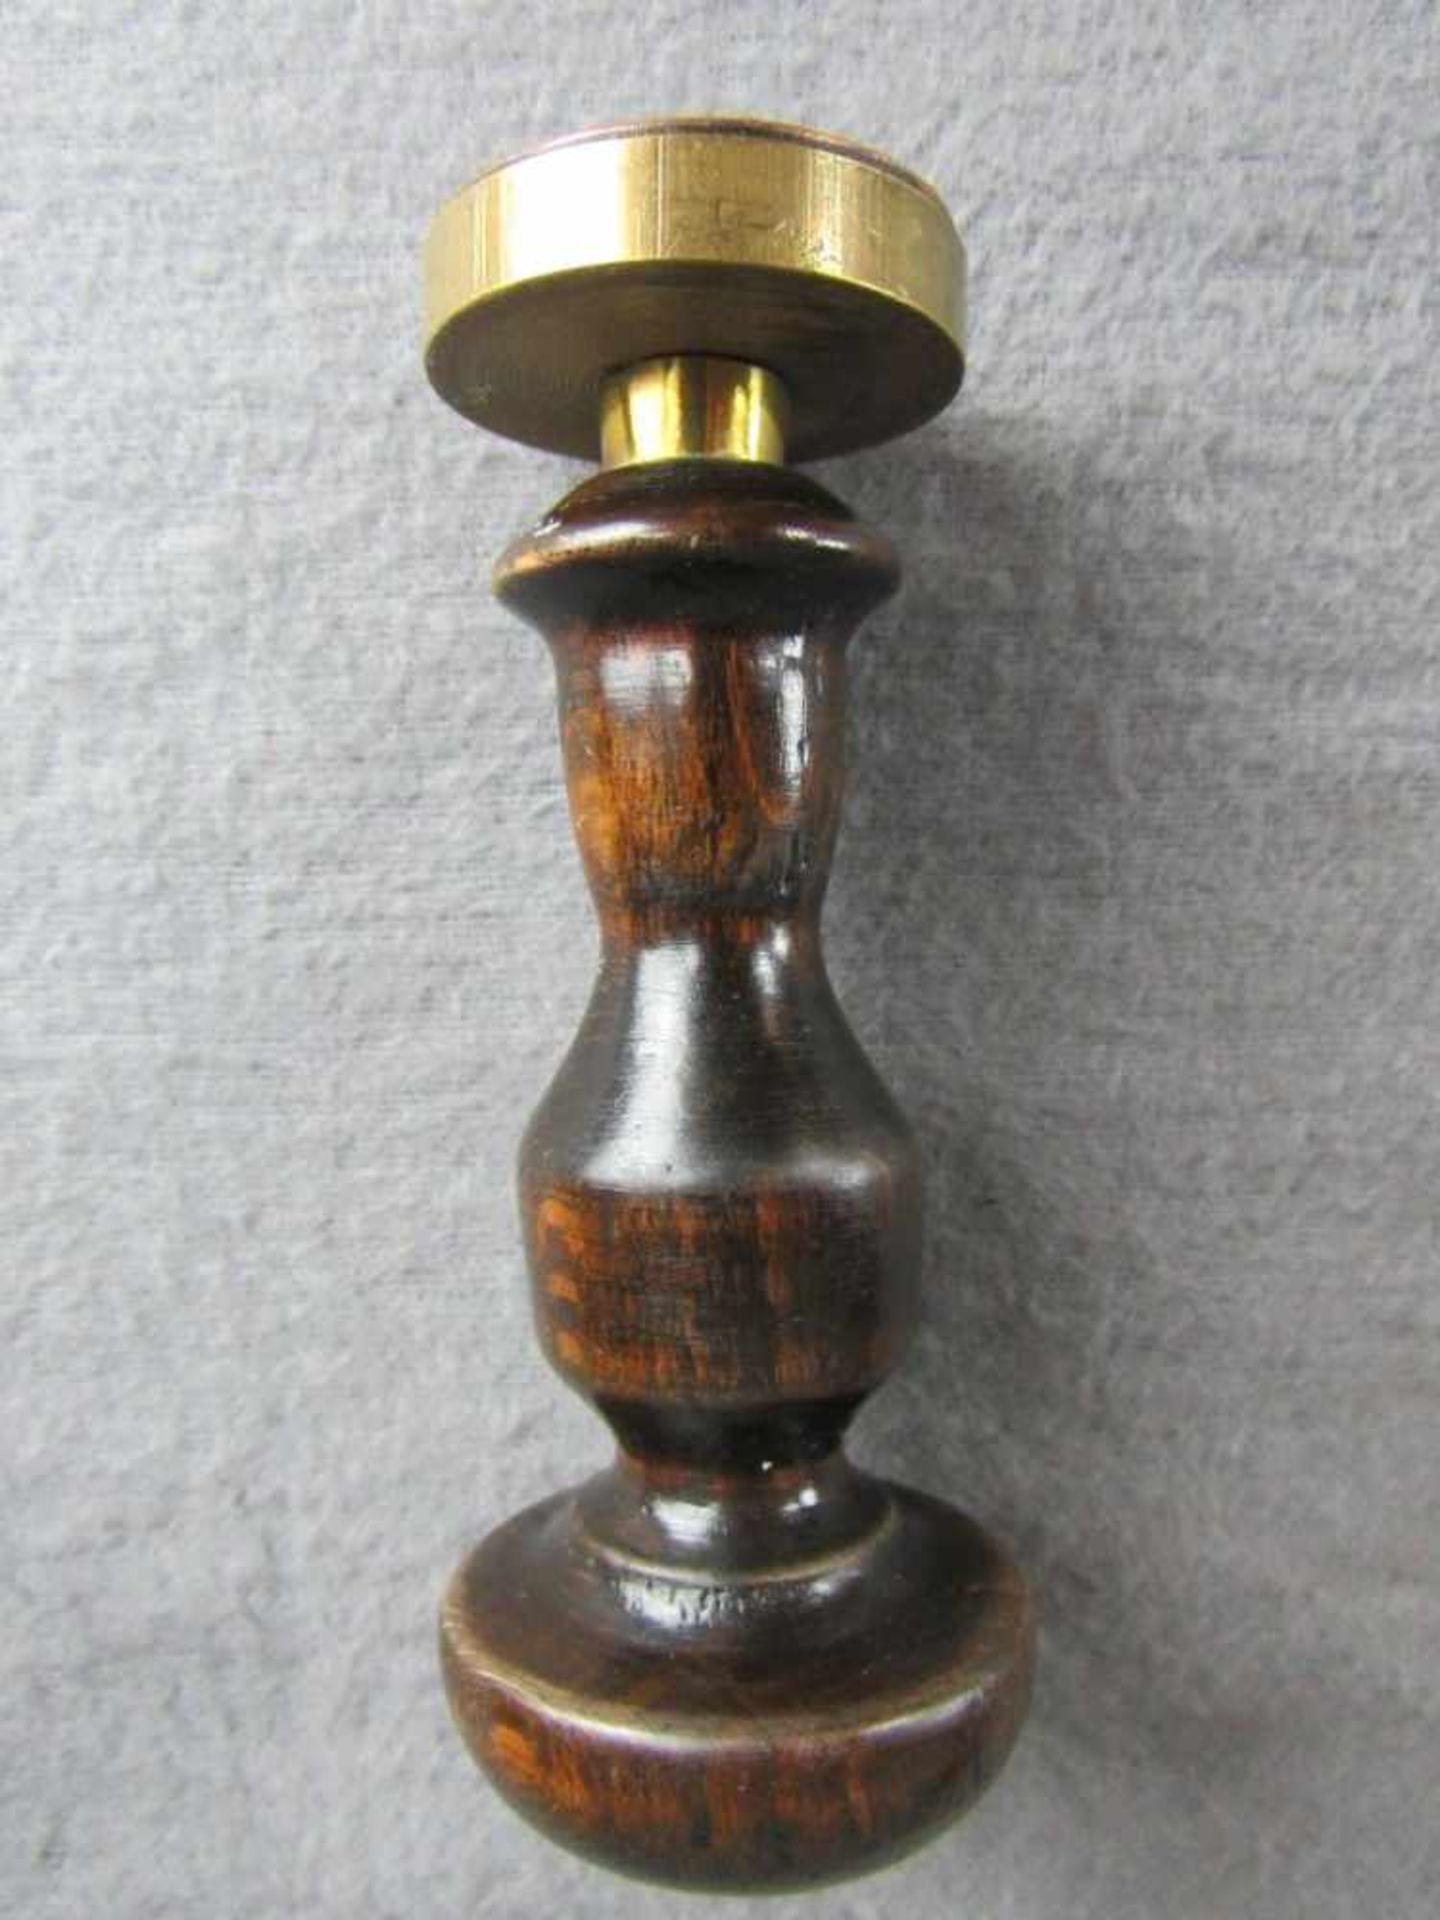 Dienststempel mit Eisernen Kreuz 100% original vor 1945- - -20.00 % buyer's premium on the hammer